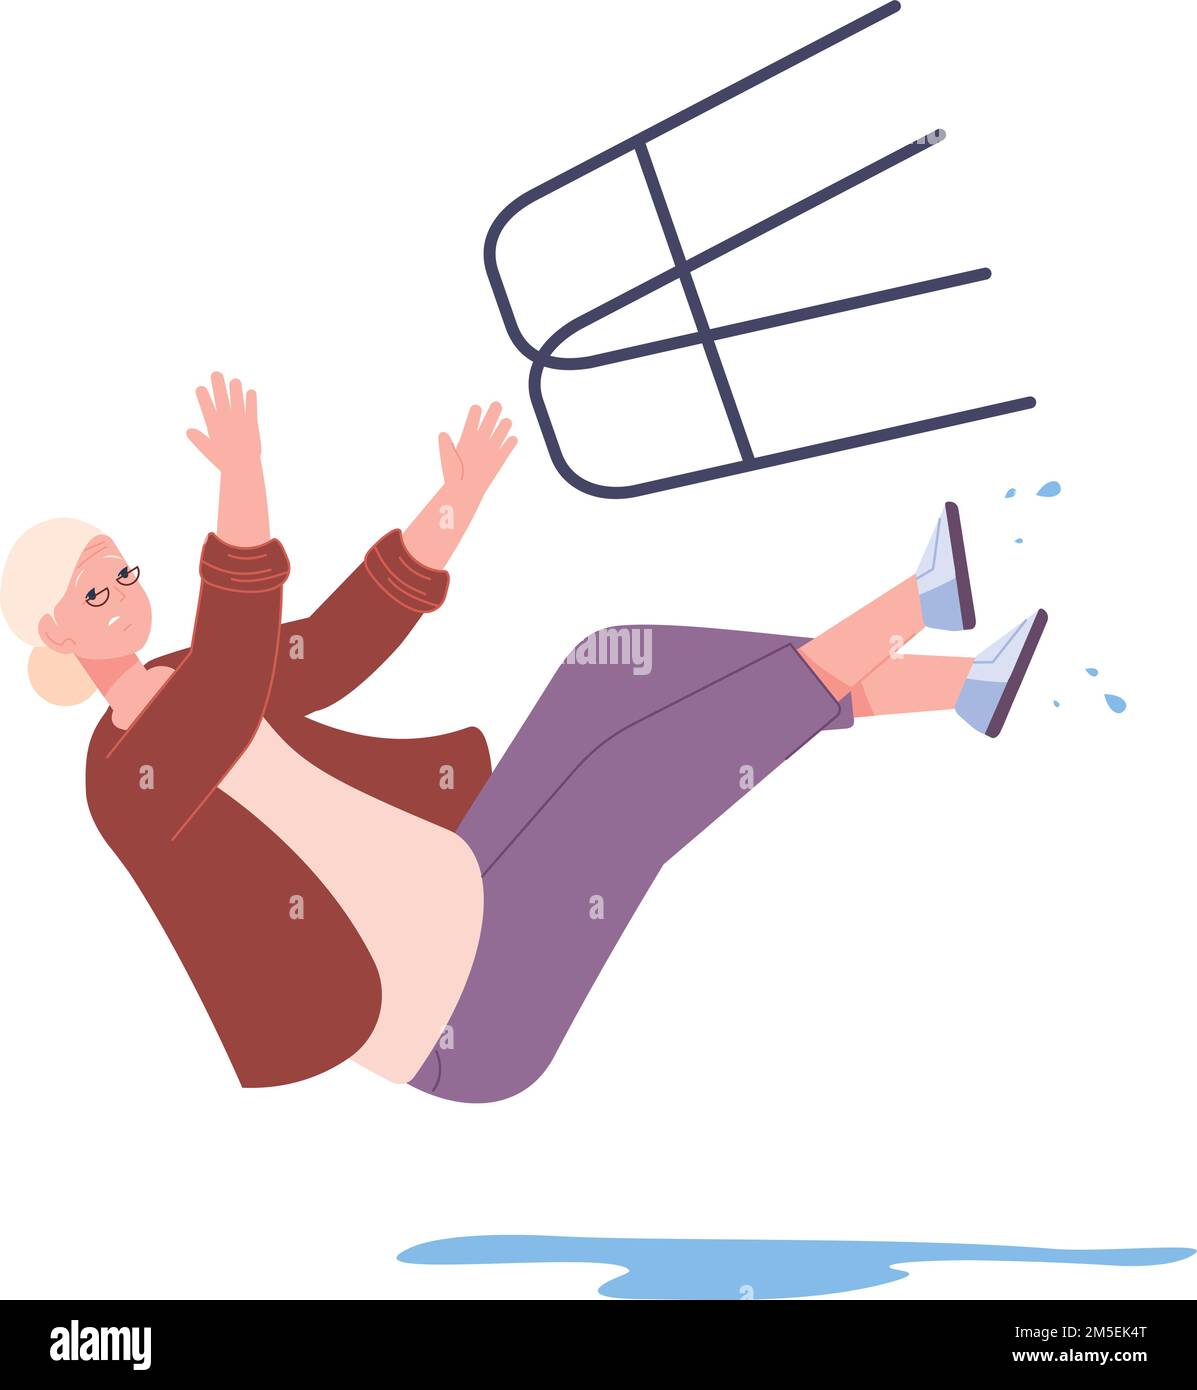 Senior woman slipping on wet floor. Elderly person falling